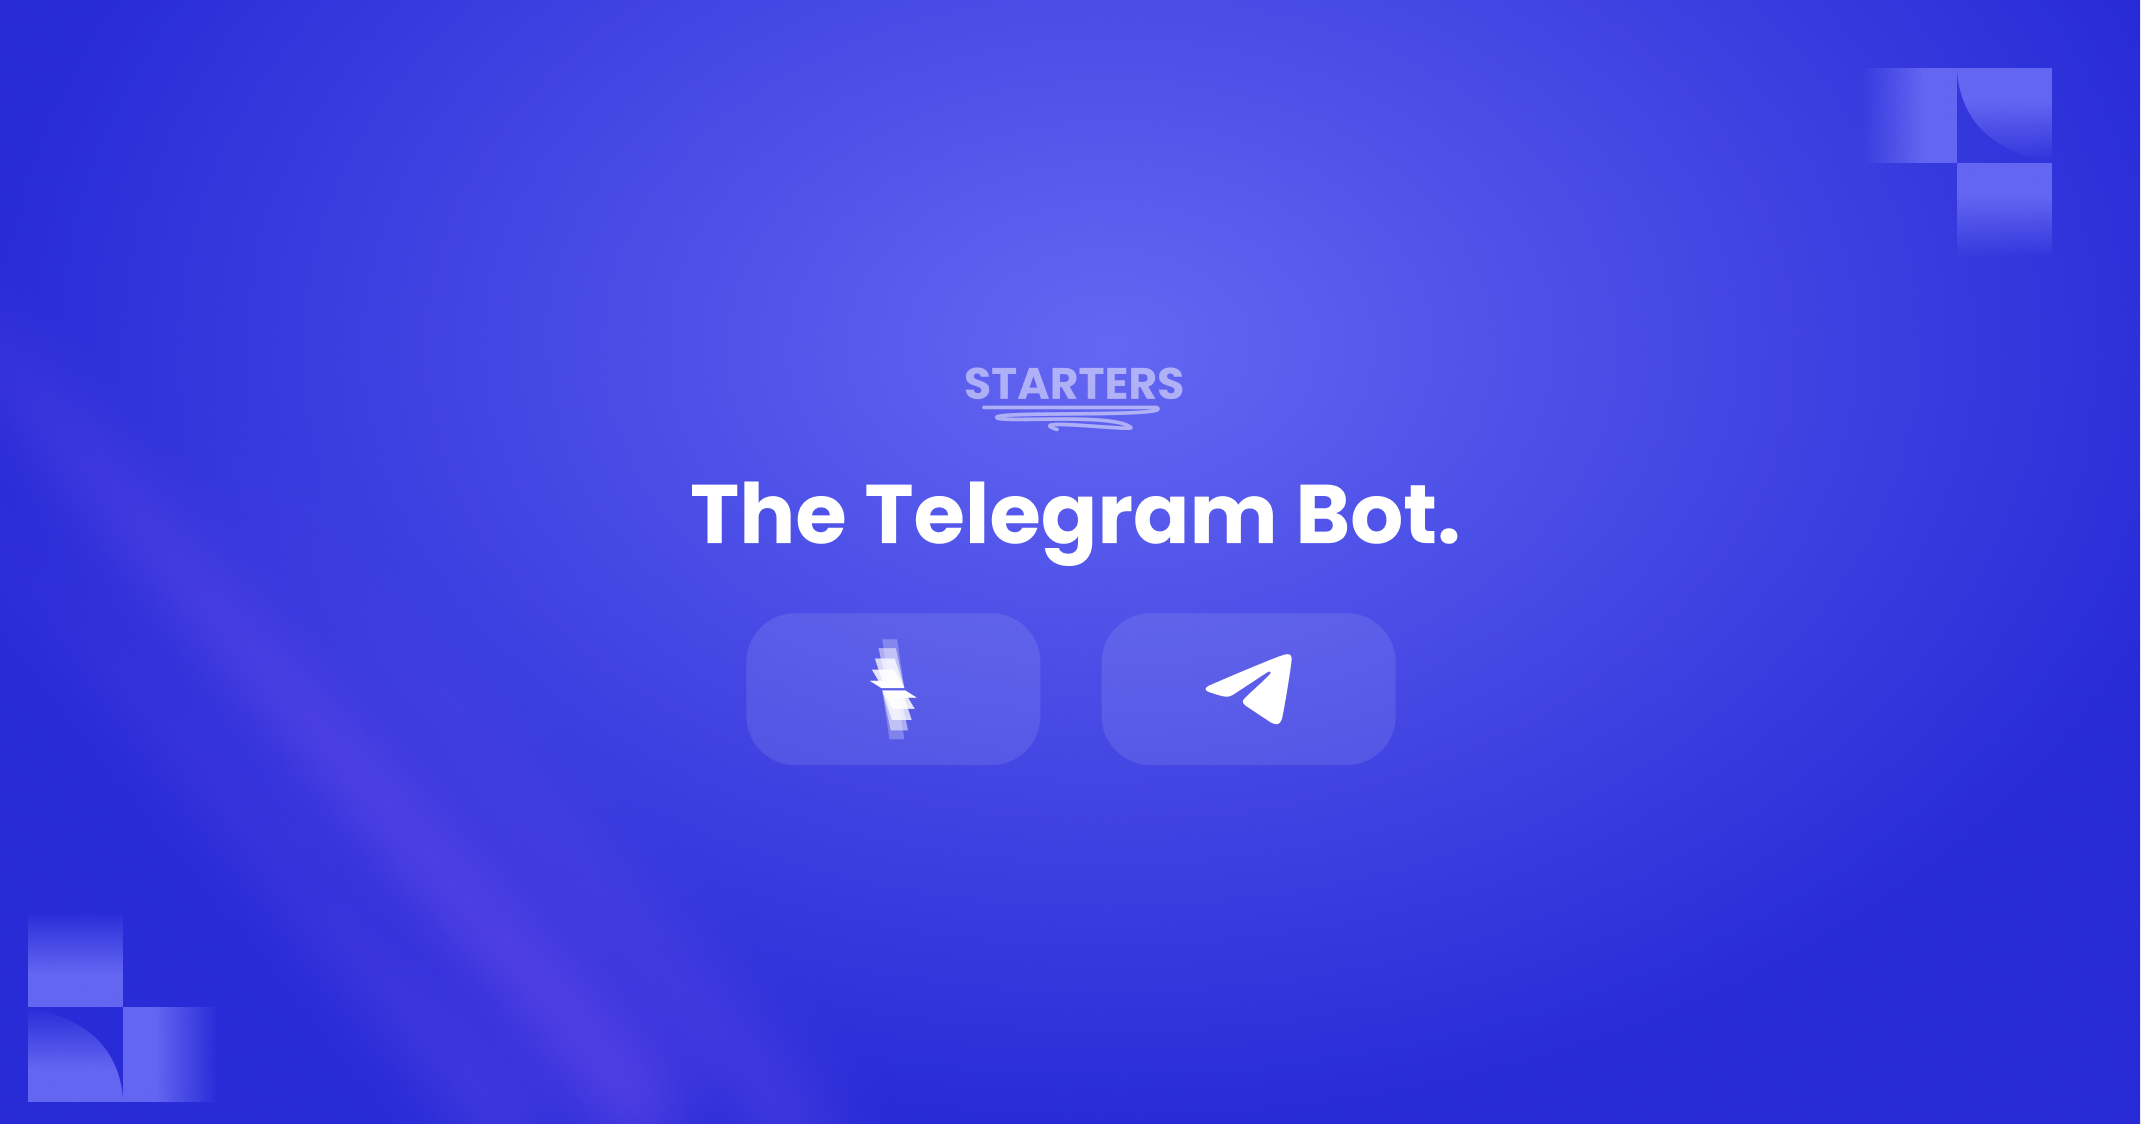 The Telegram Bot Starter.